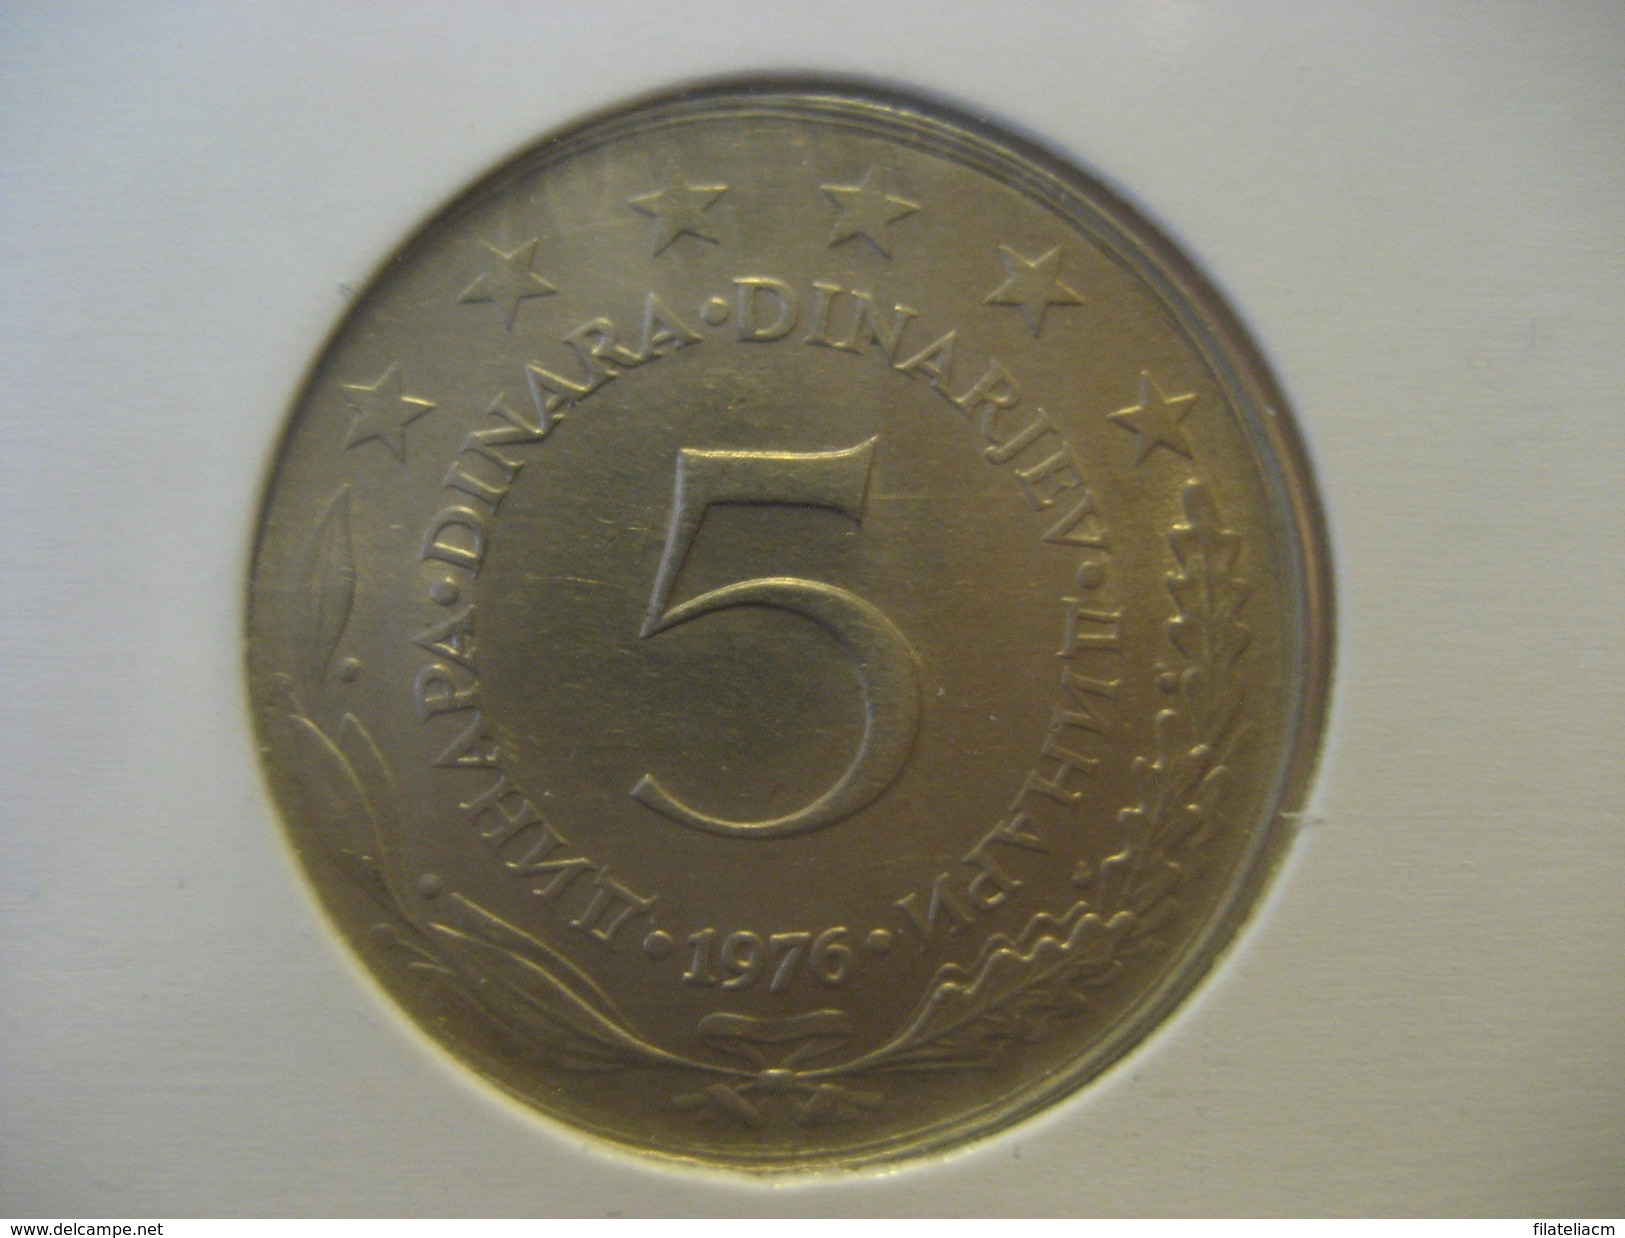 5 Dinar 1976 YUGOSLAVIA Yougoslavie Coin - Yugoslavia